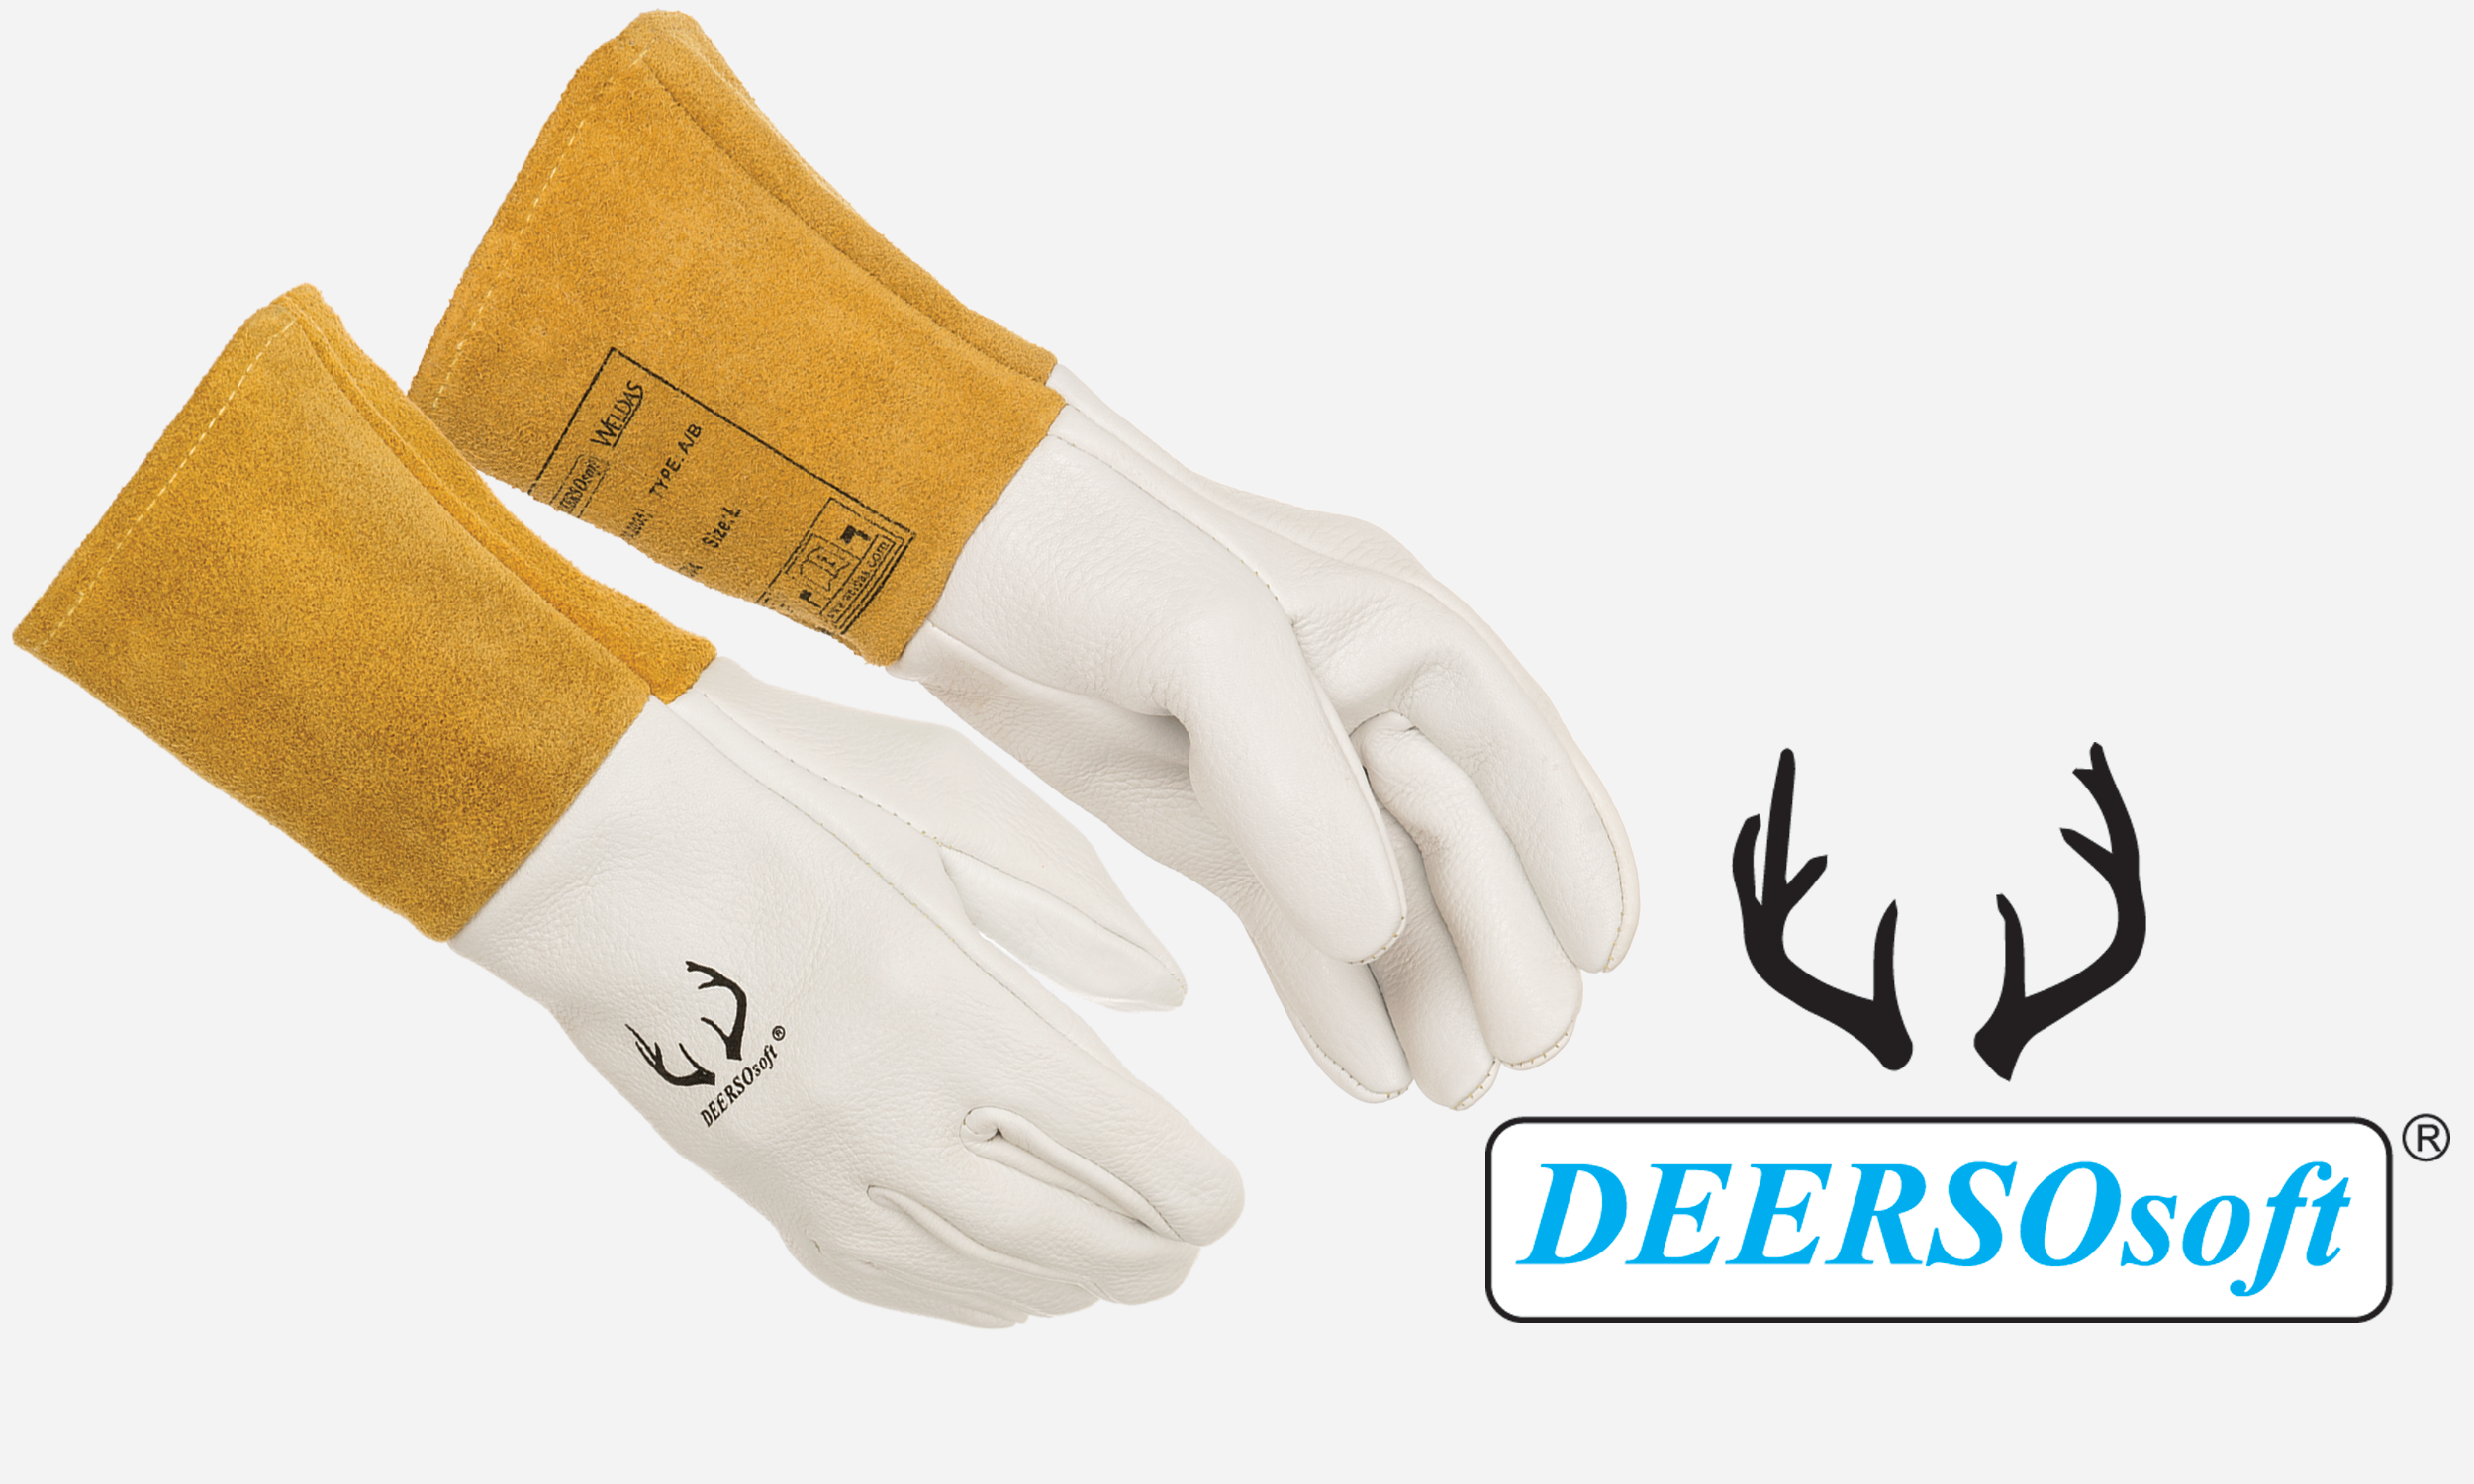 Deerskin Mig/Tig Glove 